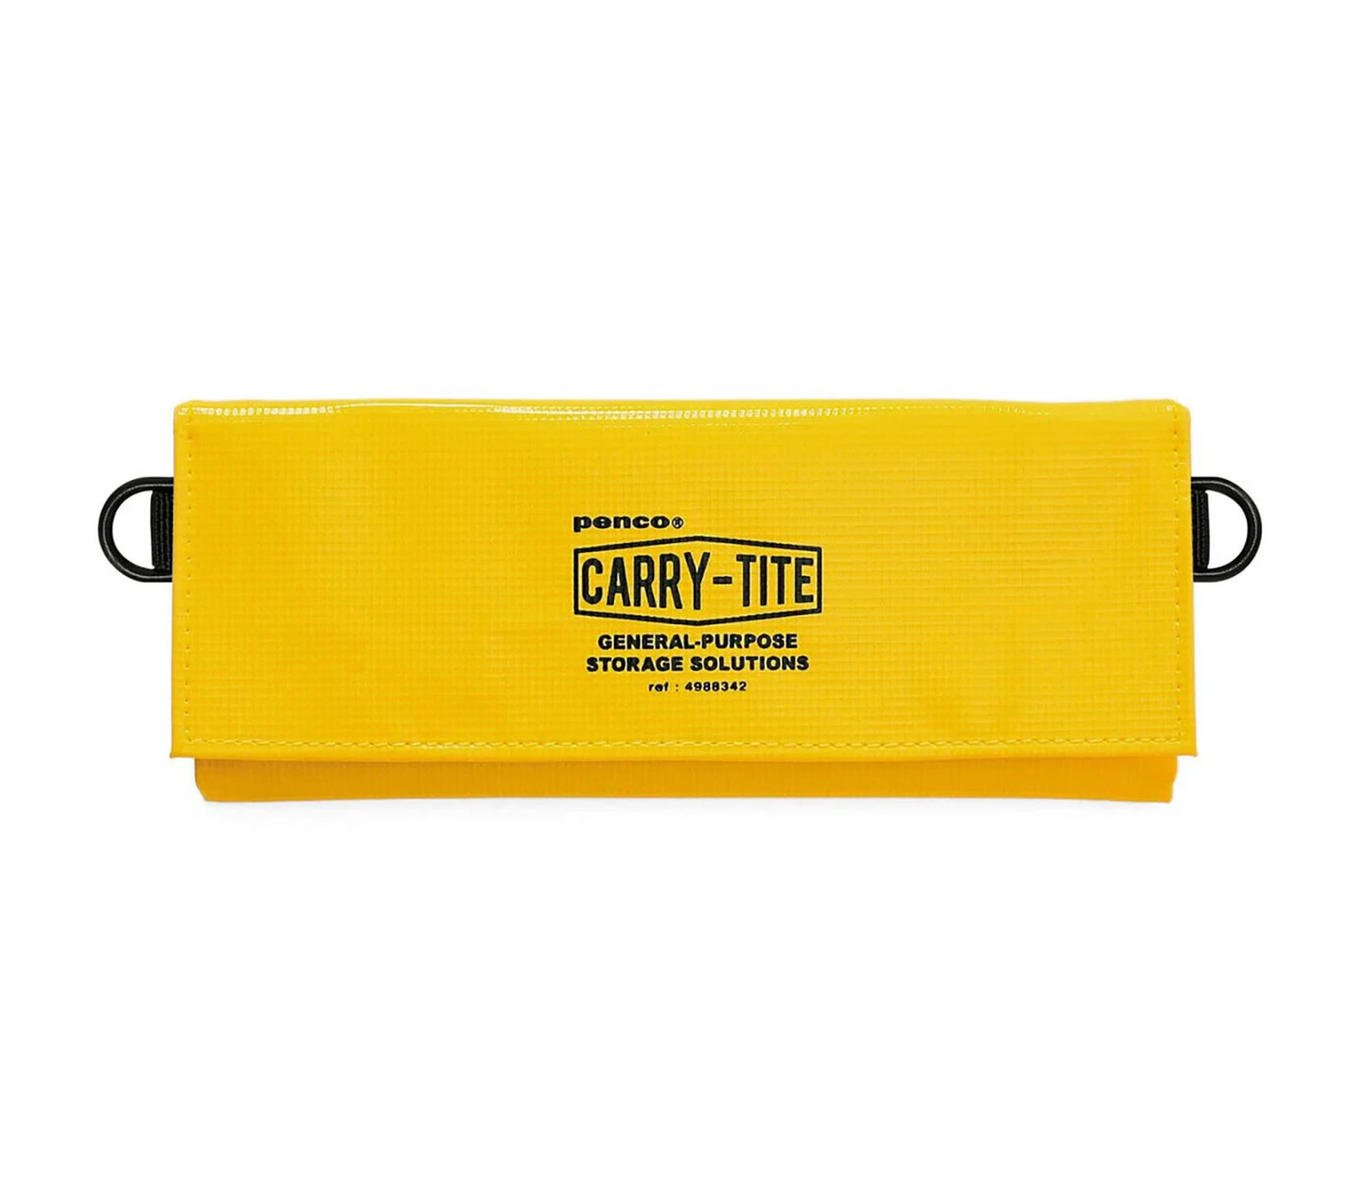 Multipurpose Carry Case - Tite Penco medium 2-way